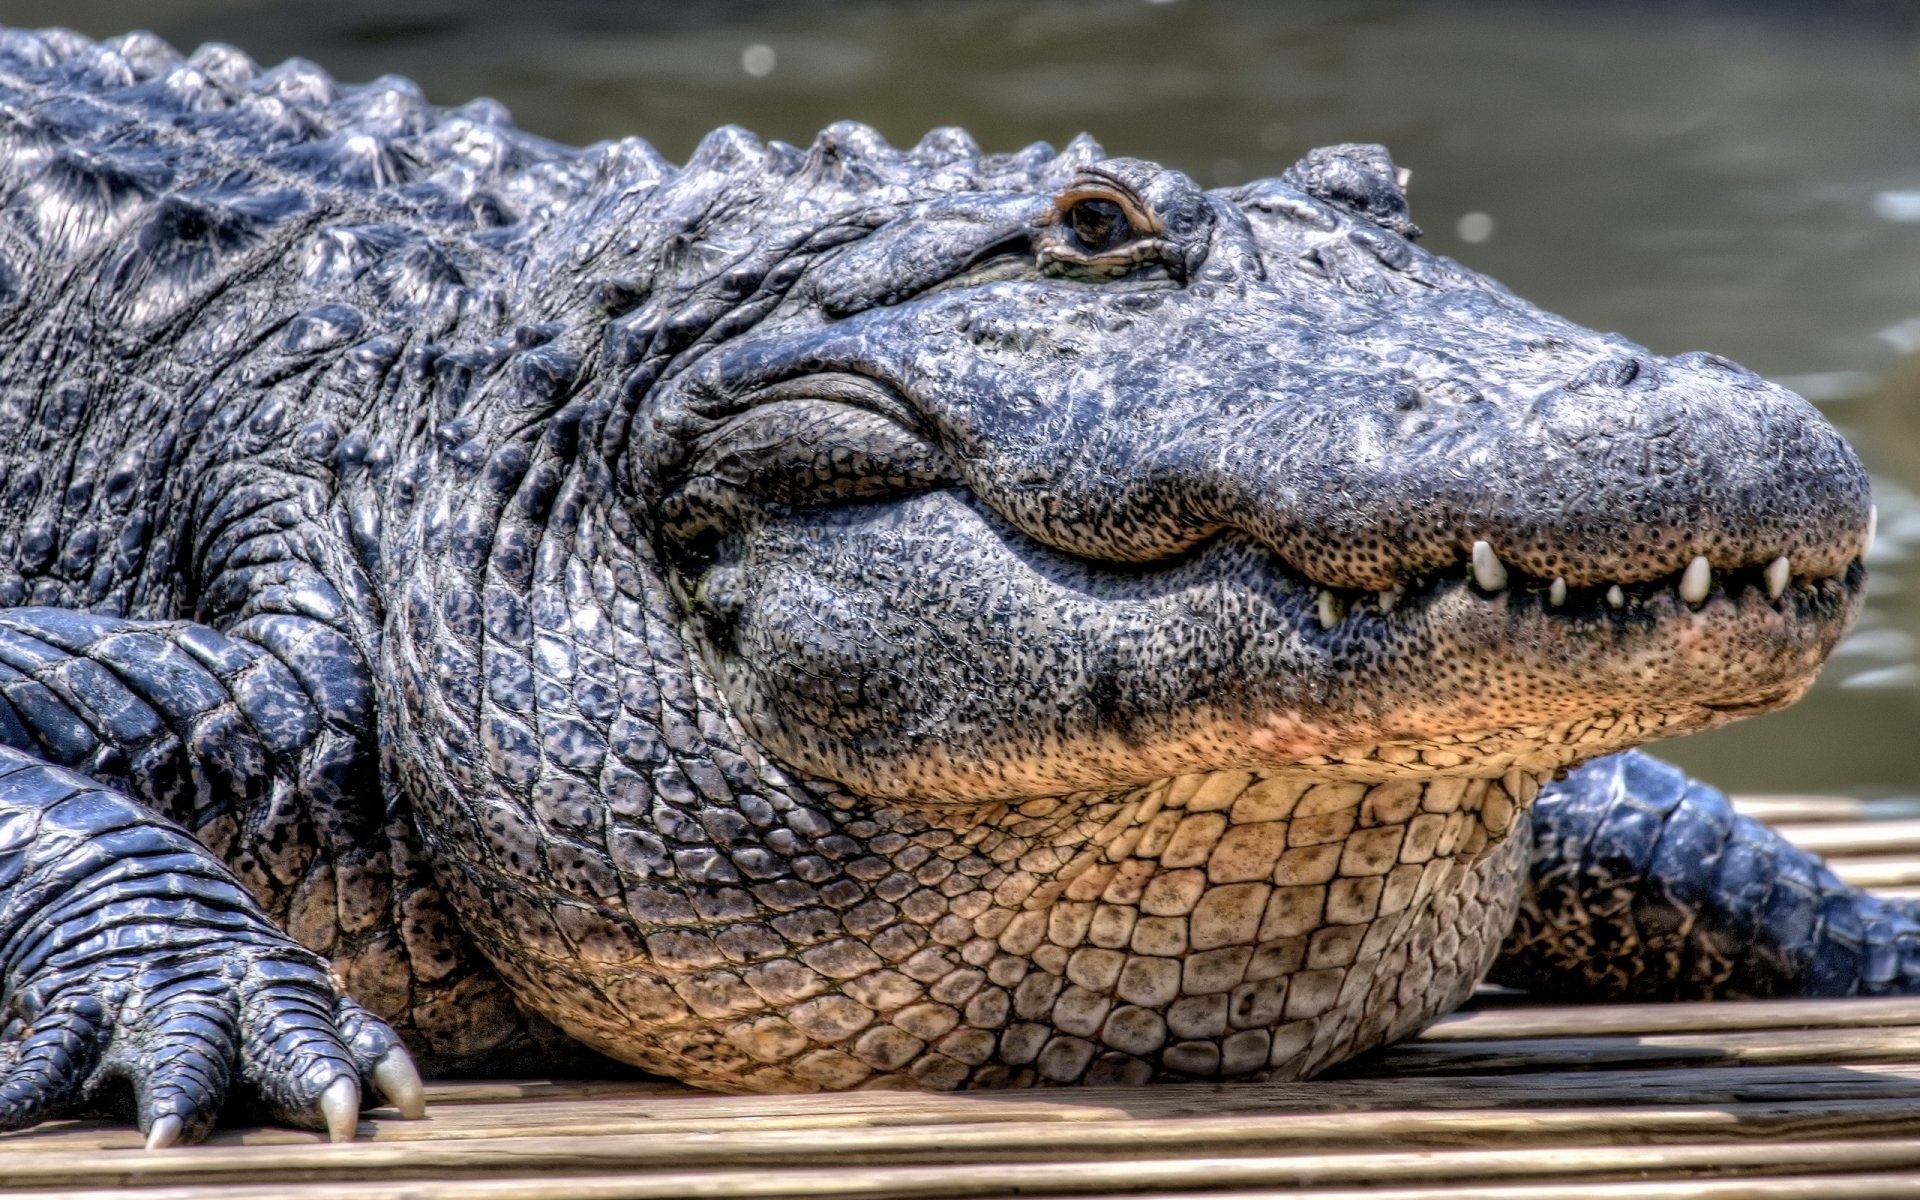 Crocodile: Alligator, A large crocodilian reptile found in the Southeastern US. 1920x1200 HD Wallpaper.